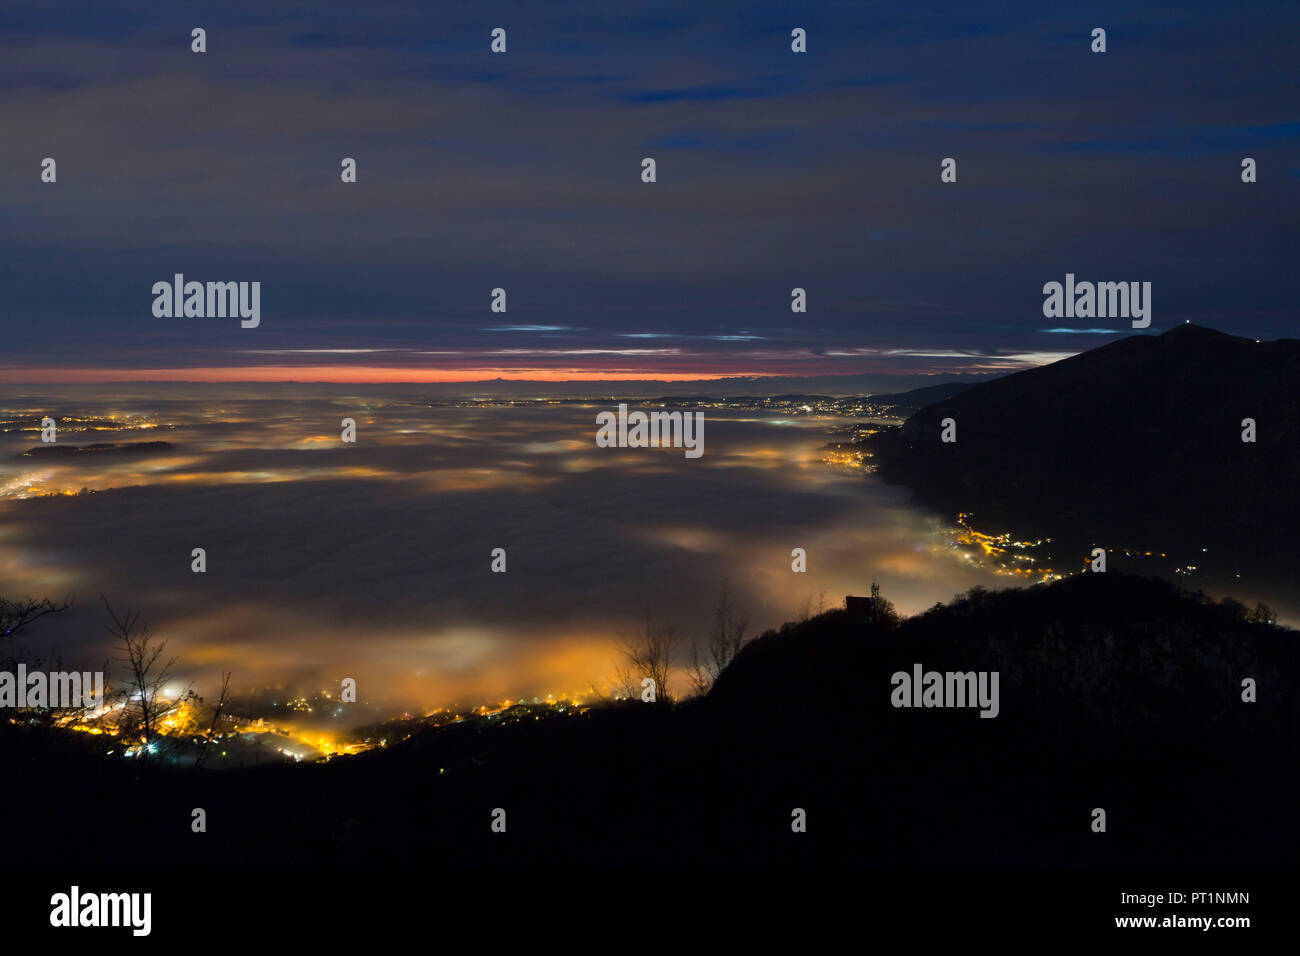 Nebbia colorate sopra il lago di Annone visto dalla cima del Monte Barro al crepuscolo, Monte Barro Parco Regionale, provincia di Lecco, Lombardia, Italia Foto Stock